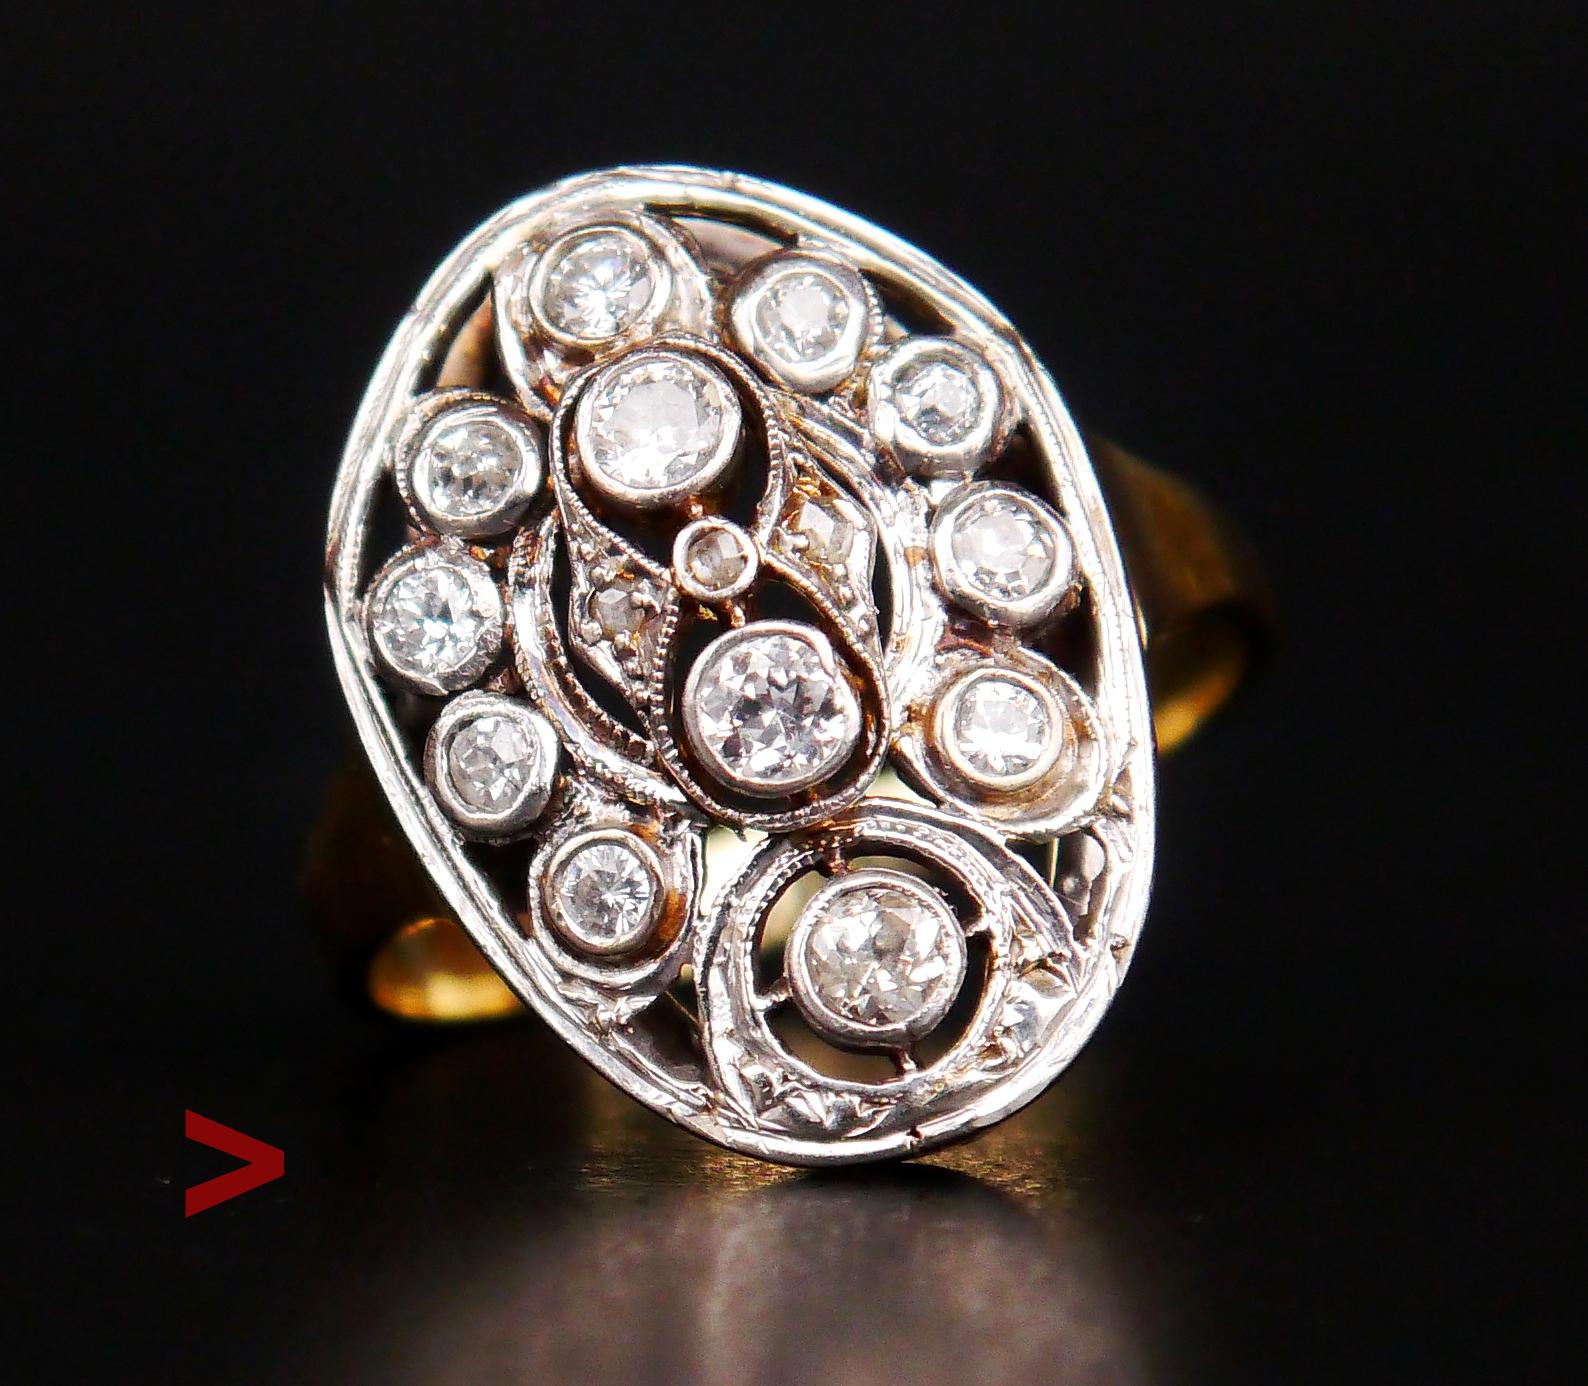 Dänischer Ring, hergestellt ca. 1920 - 1930s.

Massives/geprüftes Band aus 14 Karat Grüngold + Zifferblatt aus 14 Karat Weißgold mit durchbrochener Verzierung, besetzt mit 15 Diamanten.

Unter 10-facher Vergrößerung zeigen einige Diamanten